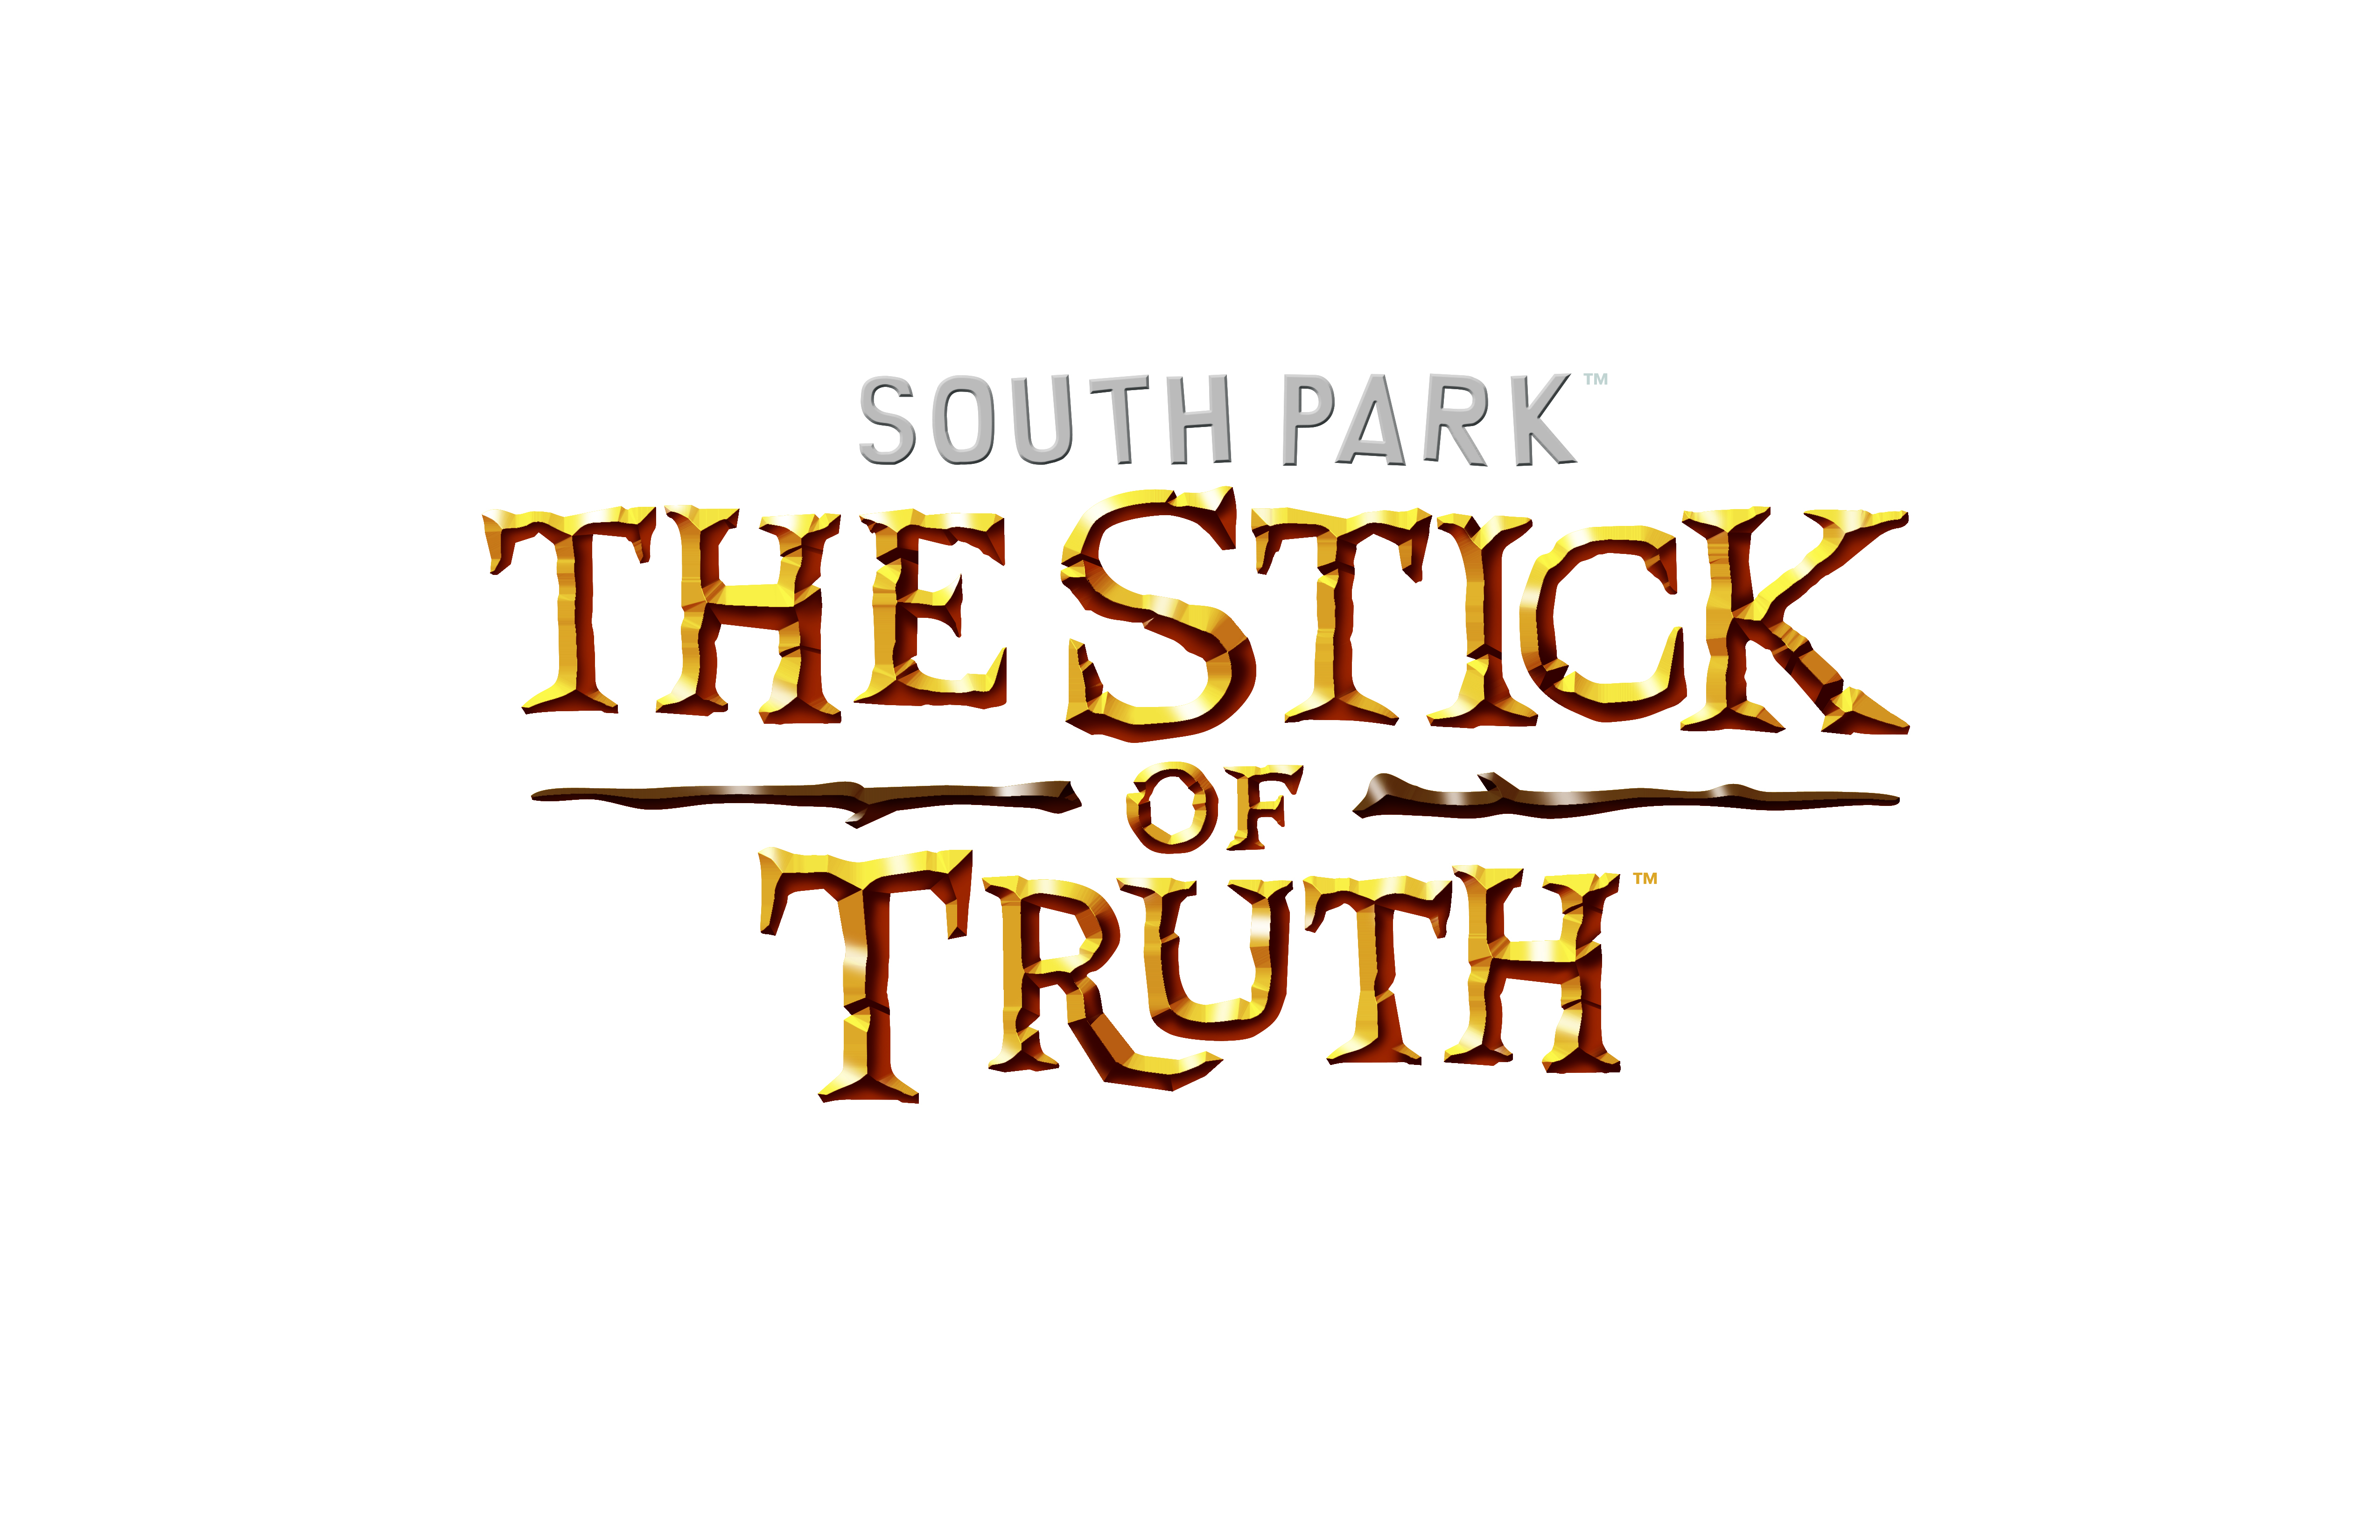 South park the stick of truth скрытые достижения в стим фото 38